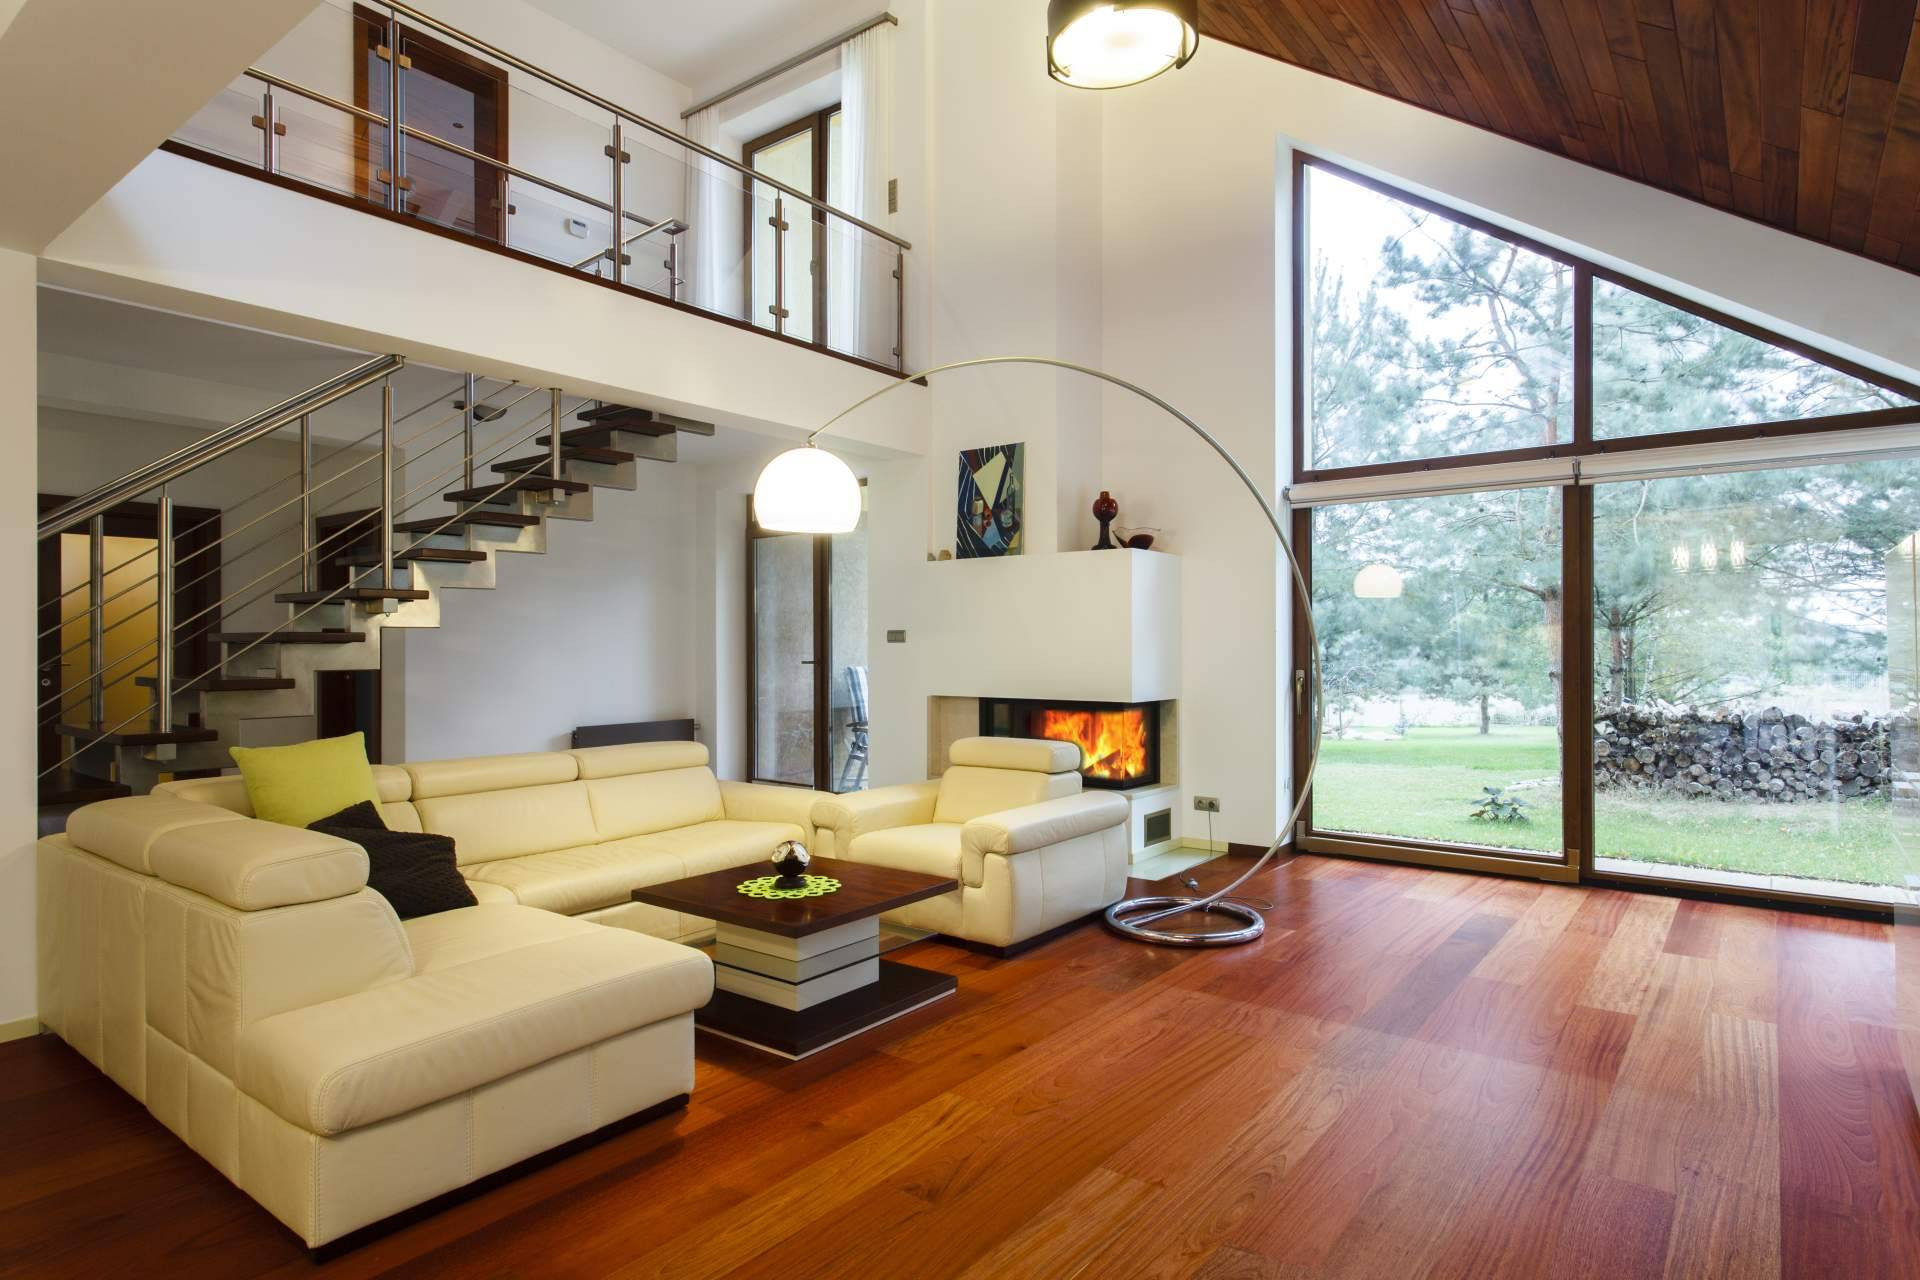  Inmobiliaria Miropiso ayuda a encontrar la casa perfecta 